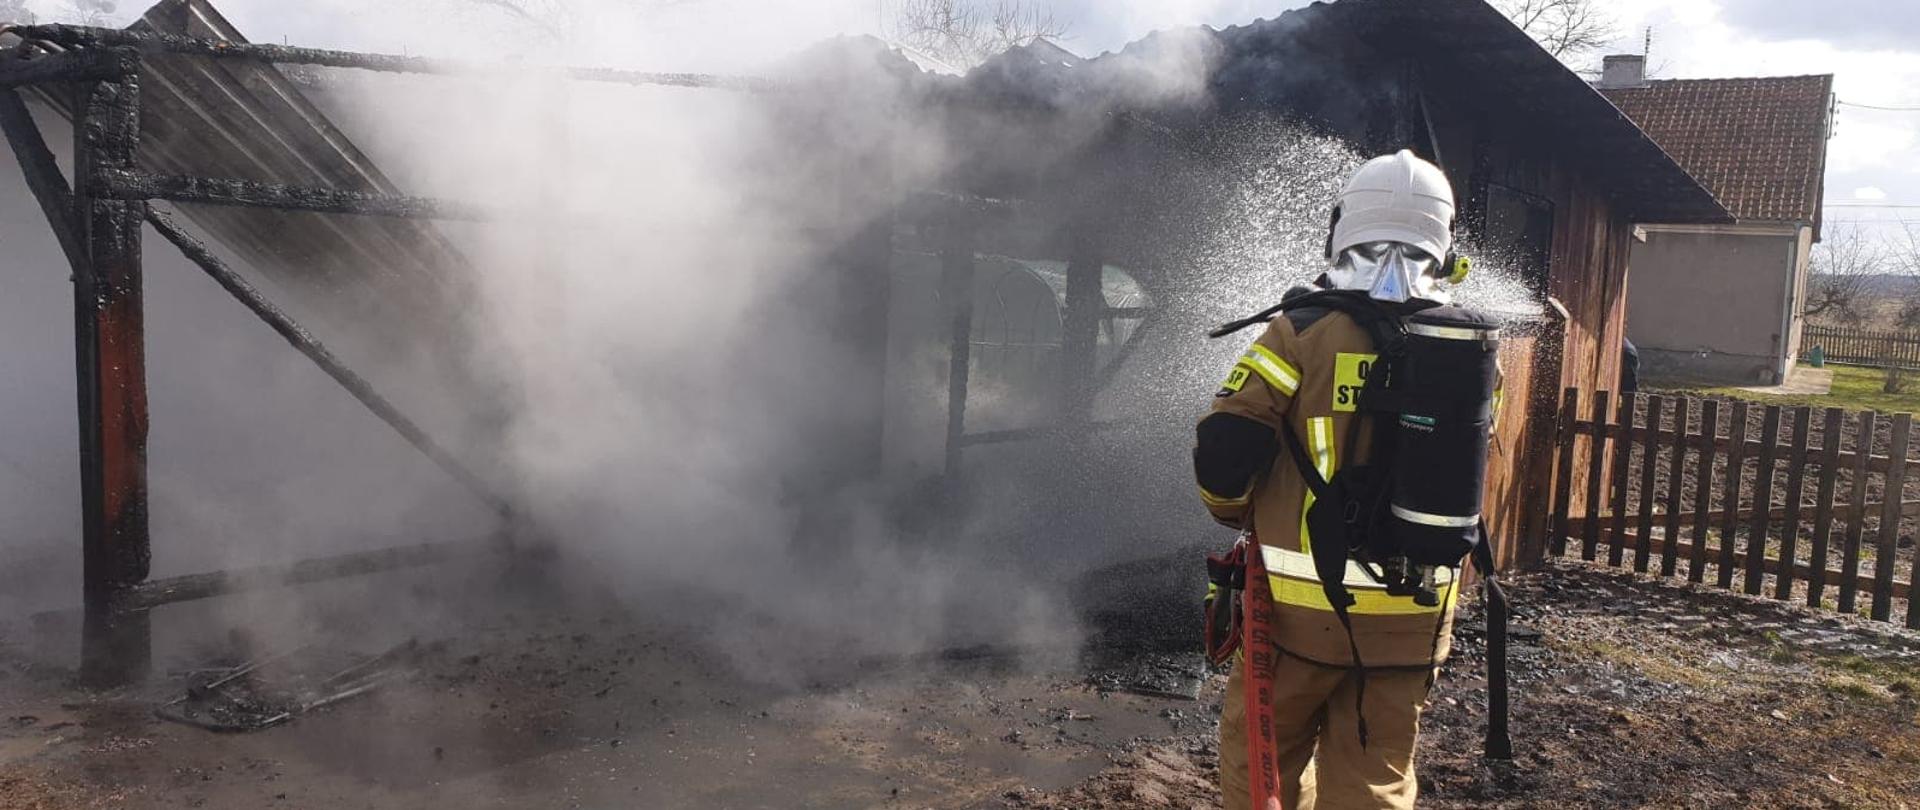 Na zdjęciu widać strażaka dogaszającego pożar garażu, który w ręku trzyma wąż strażacki